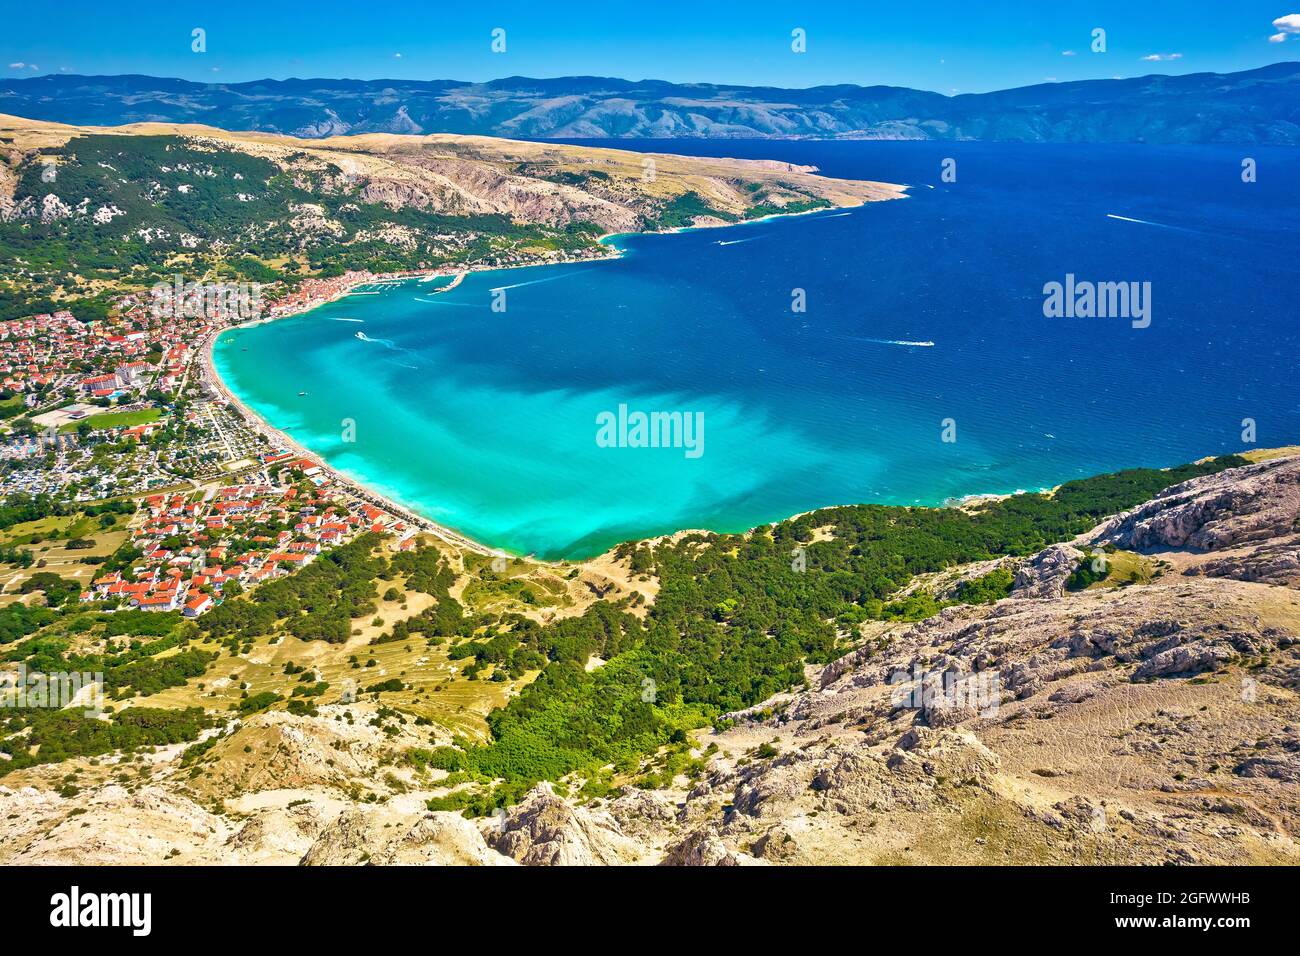 Baska lagune vue panoramique aérienne, plage turquoise sur l'île de Krk, Adriatique, Croatie Banque D'Images